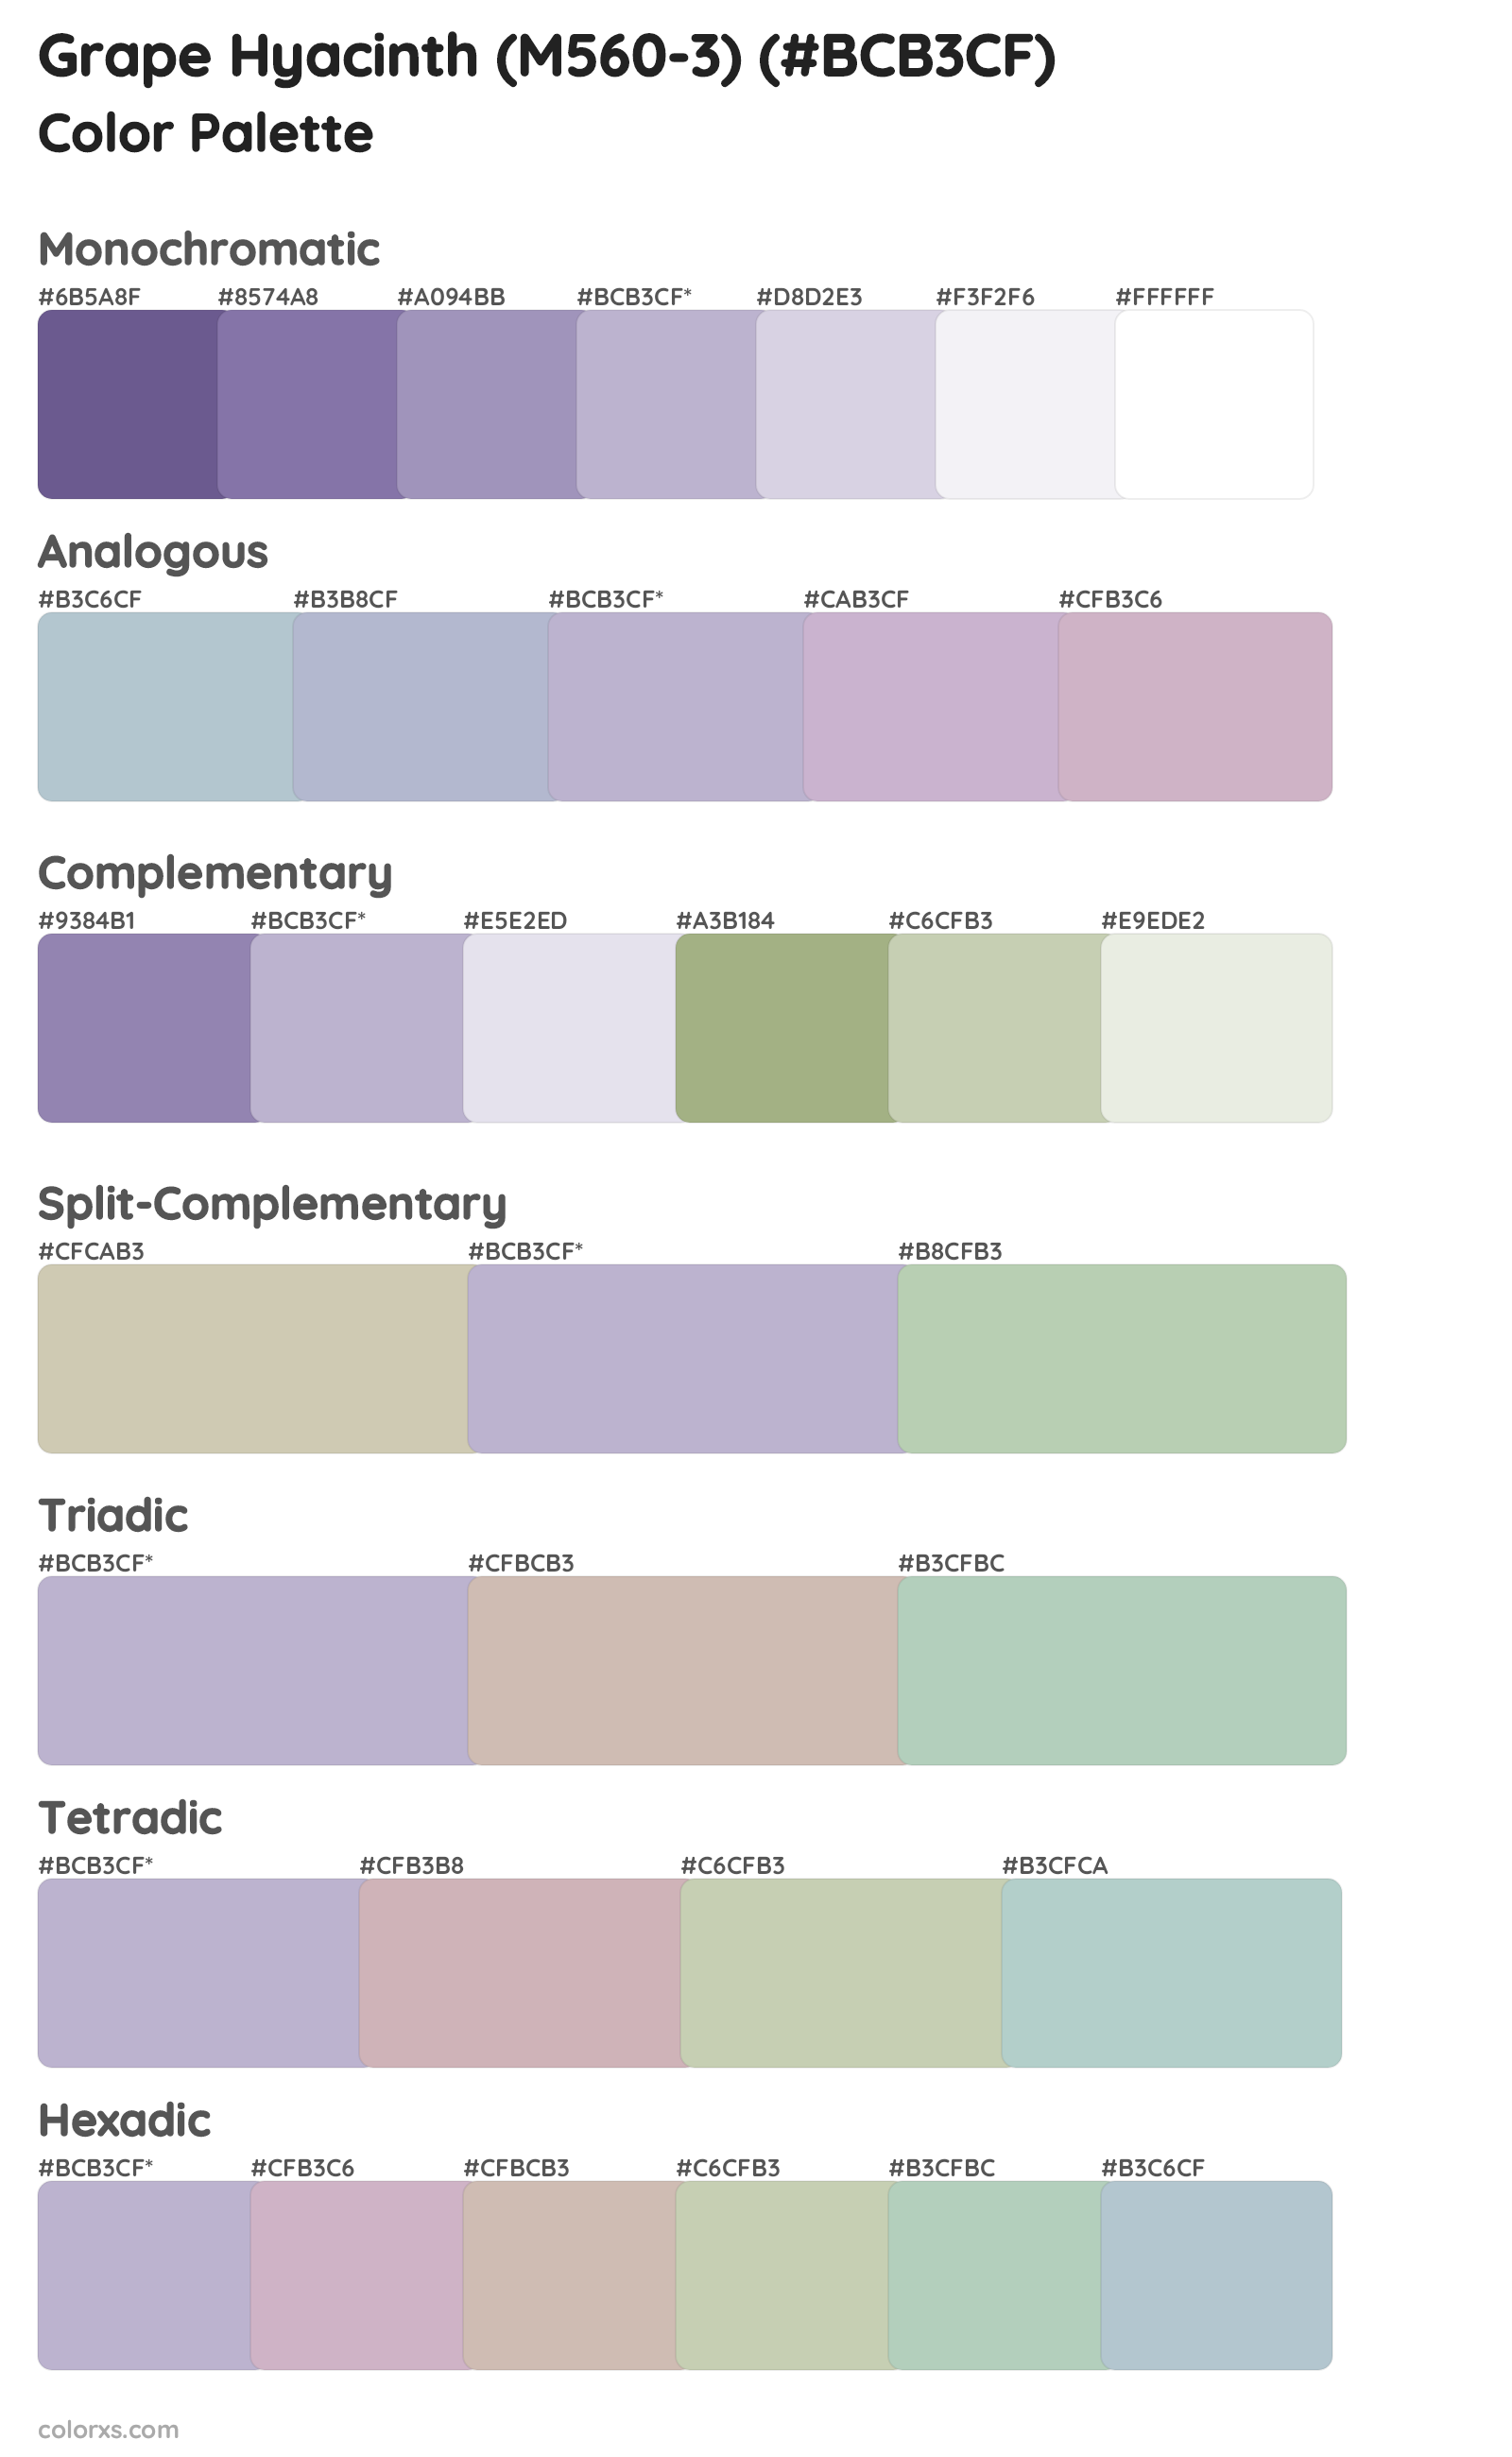 Grape Hyacinth (M560-3) Color Scheme Palettes